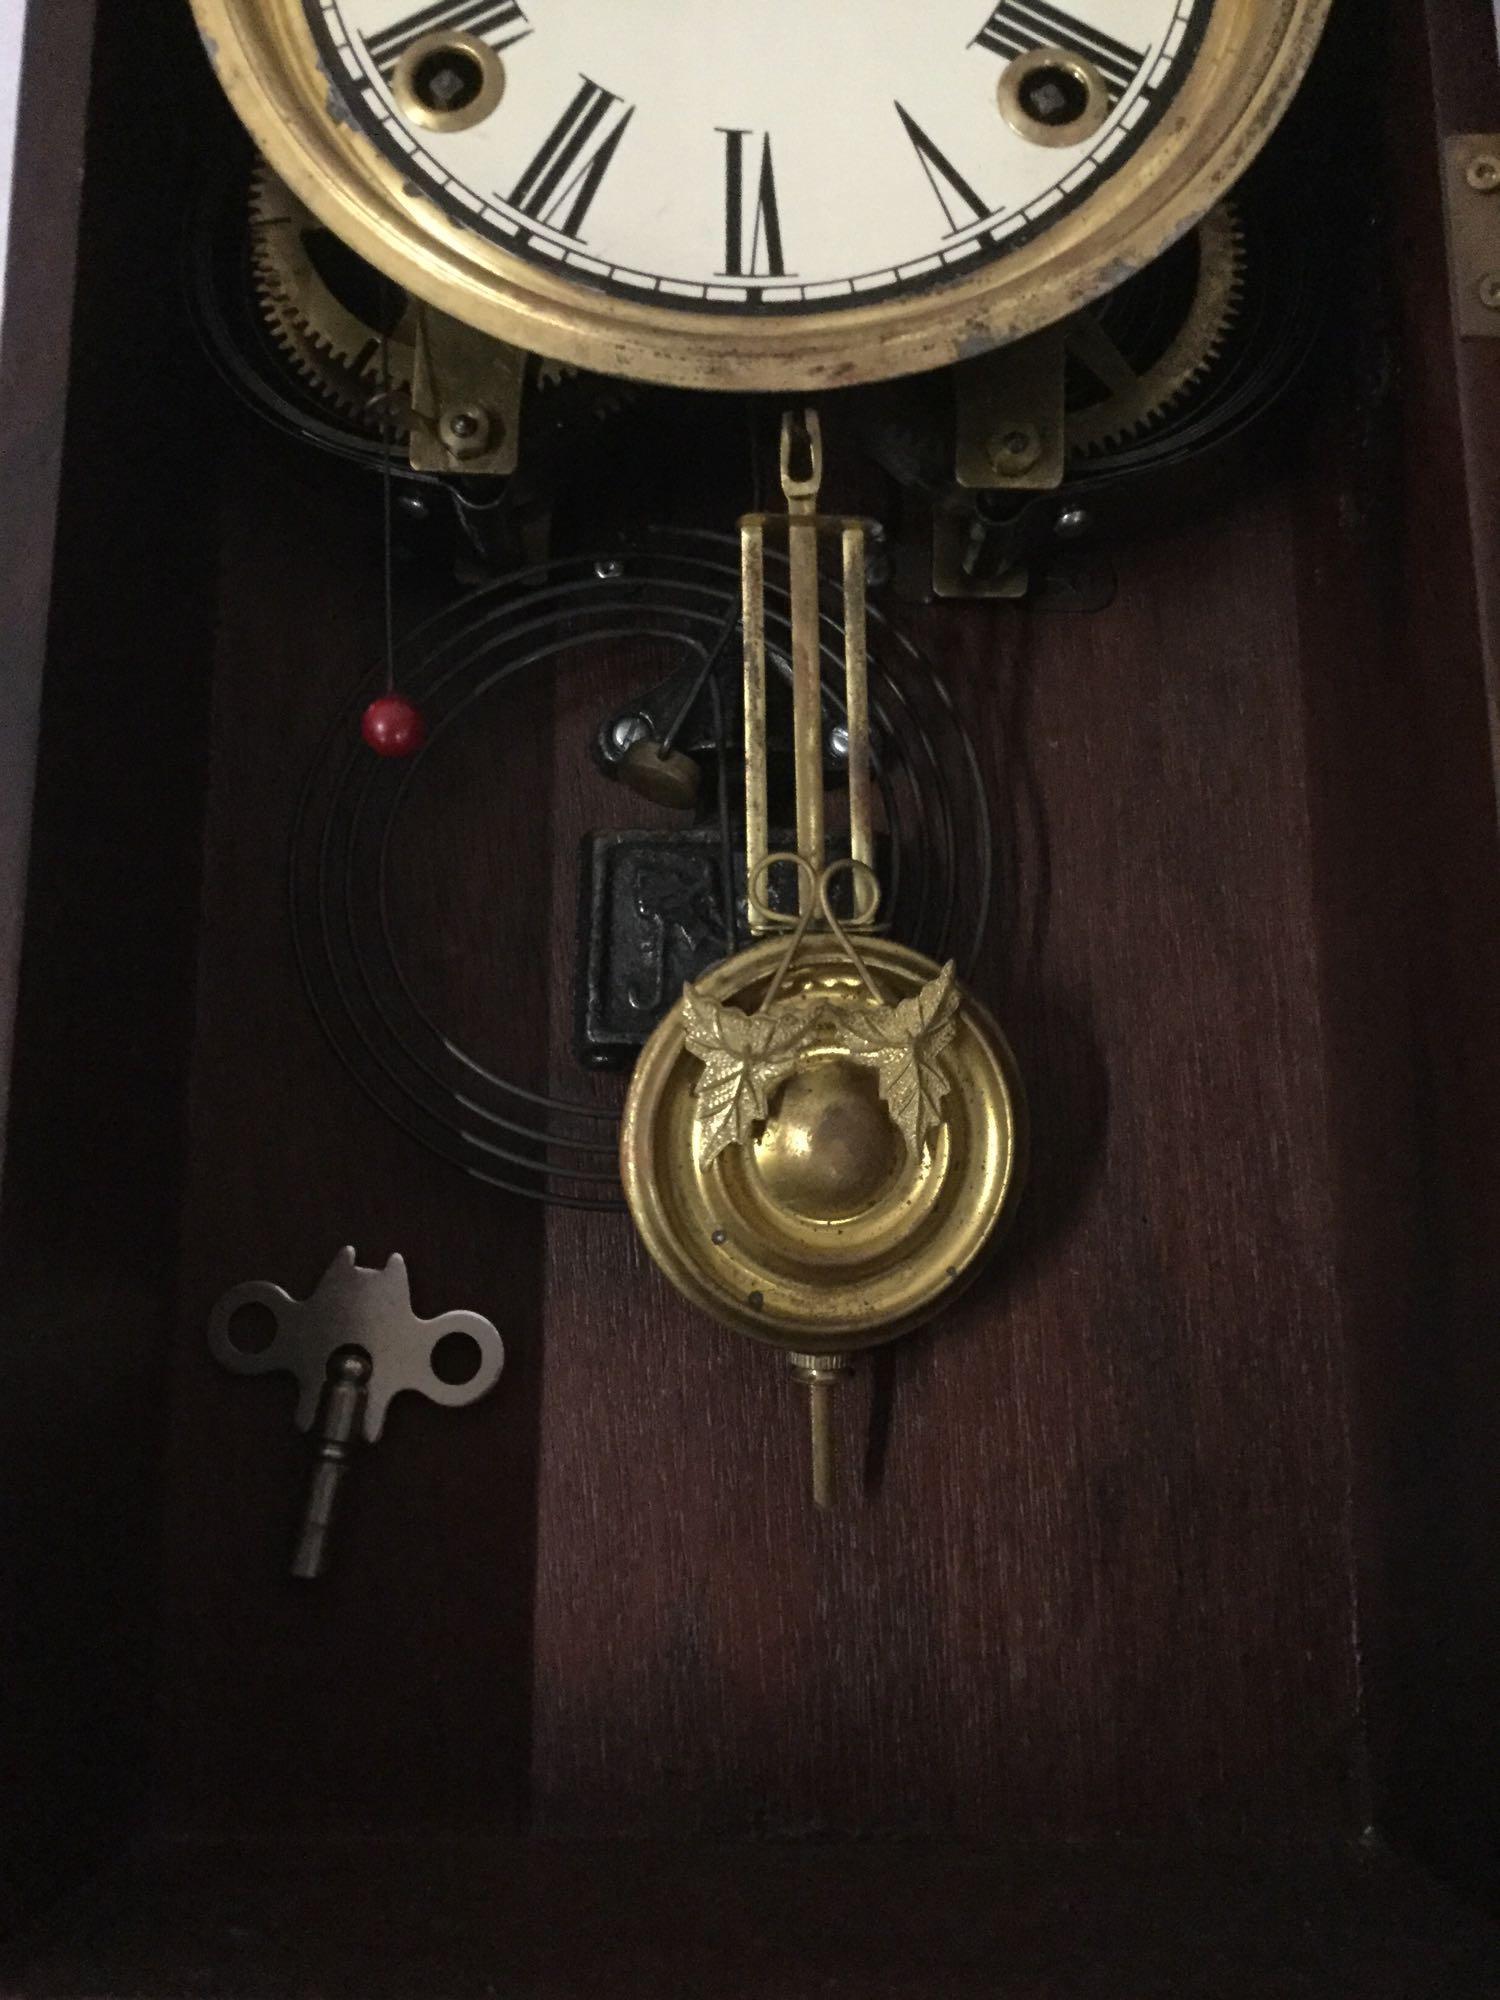 Antique time strike mantle clock with unique molding, floral design glass front & has pendulum/key